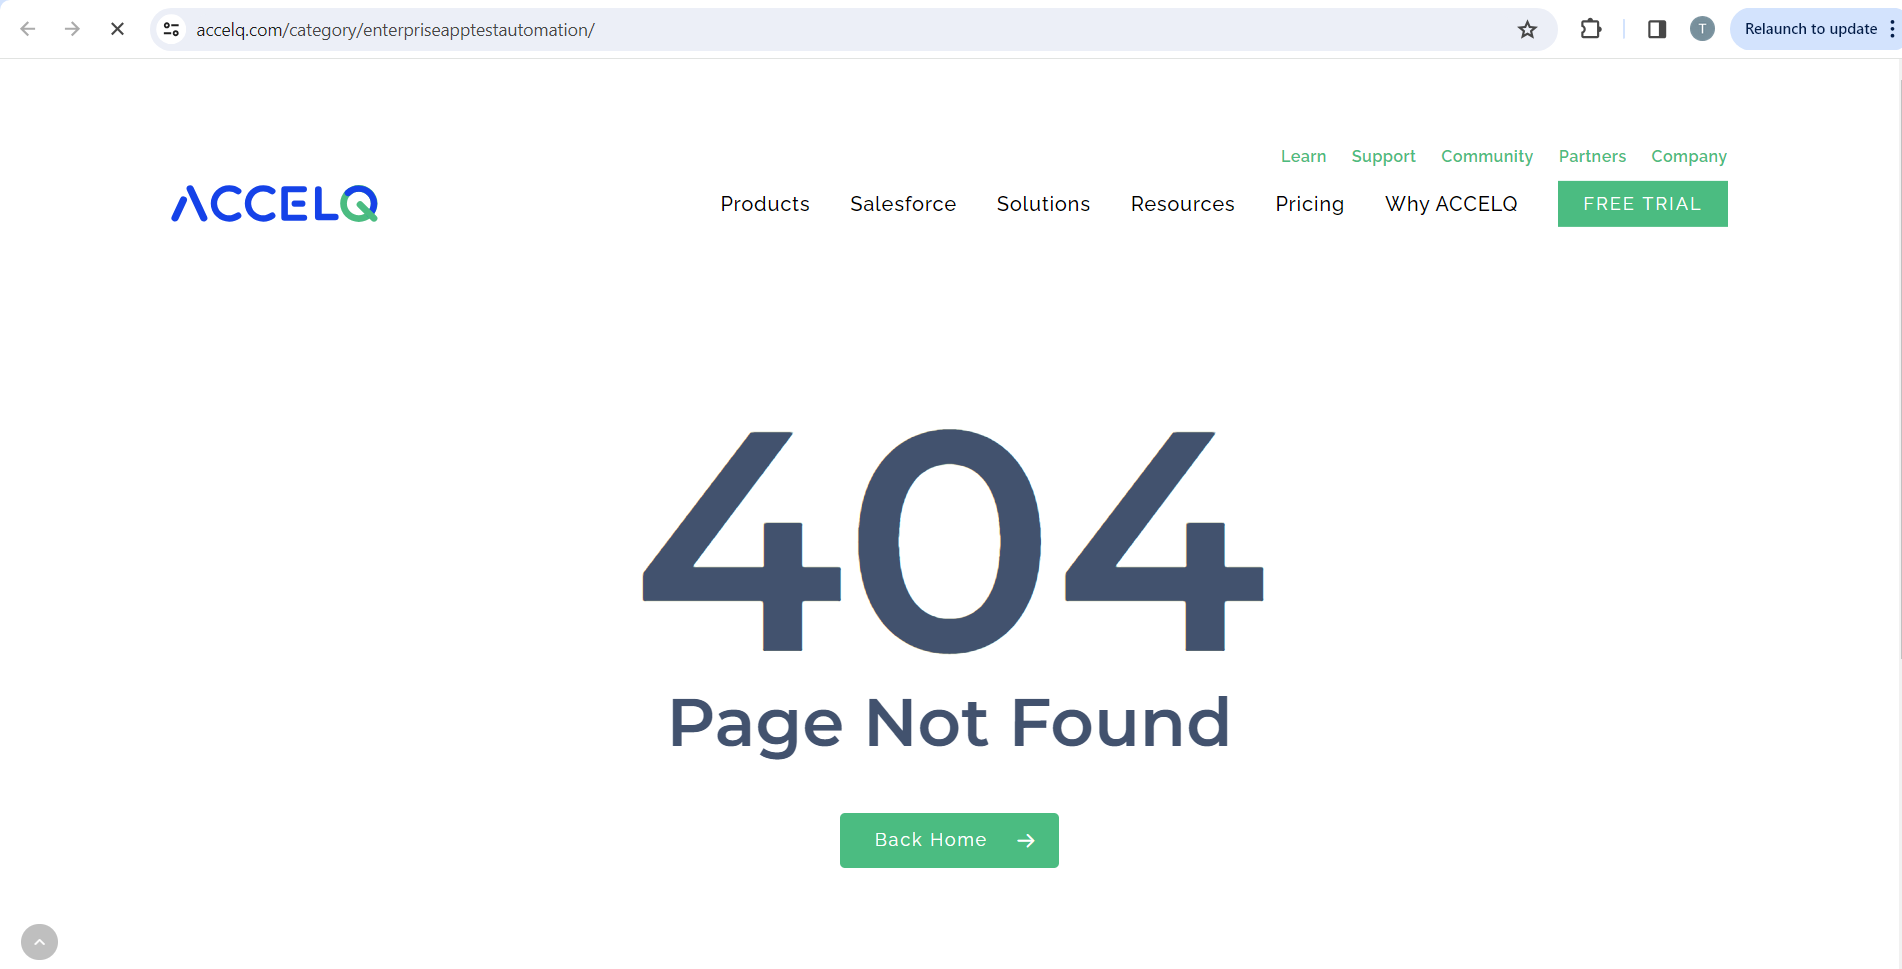 Aparece un error 404 después de hacer clic en el enlace Enterprise App Test Automation